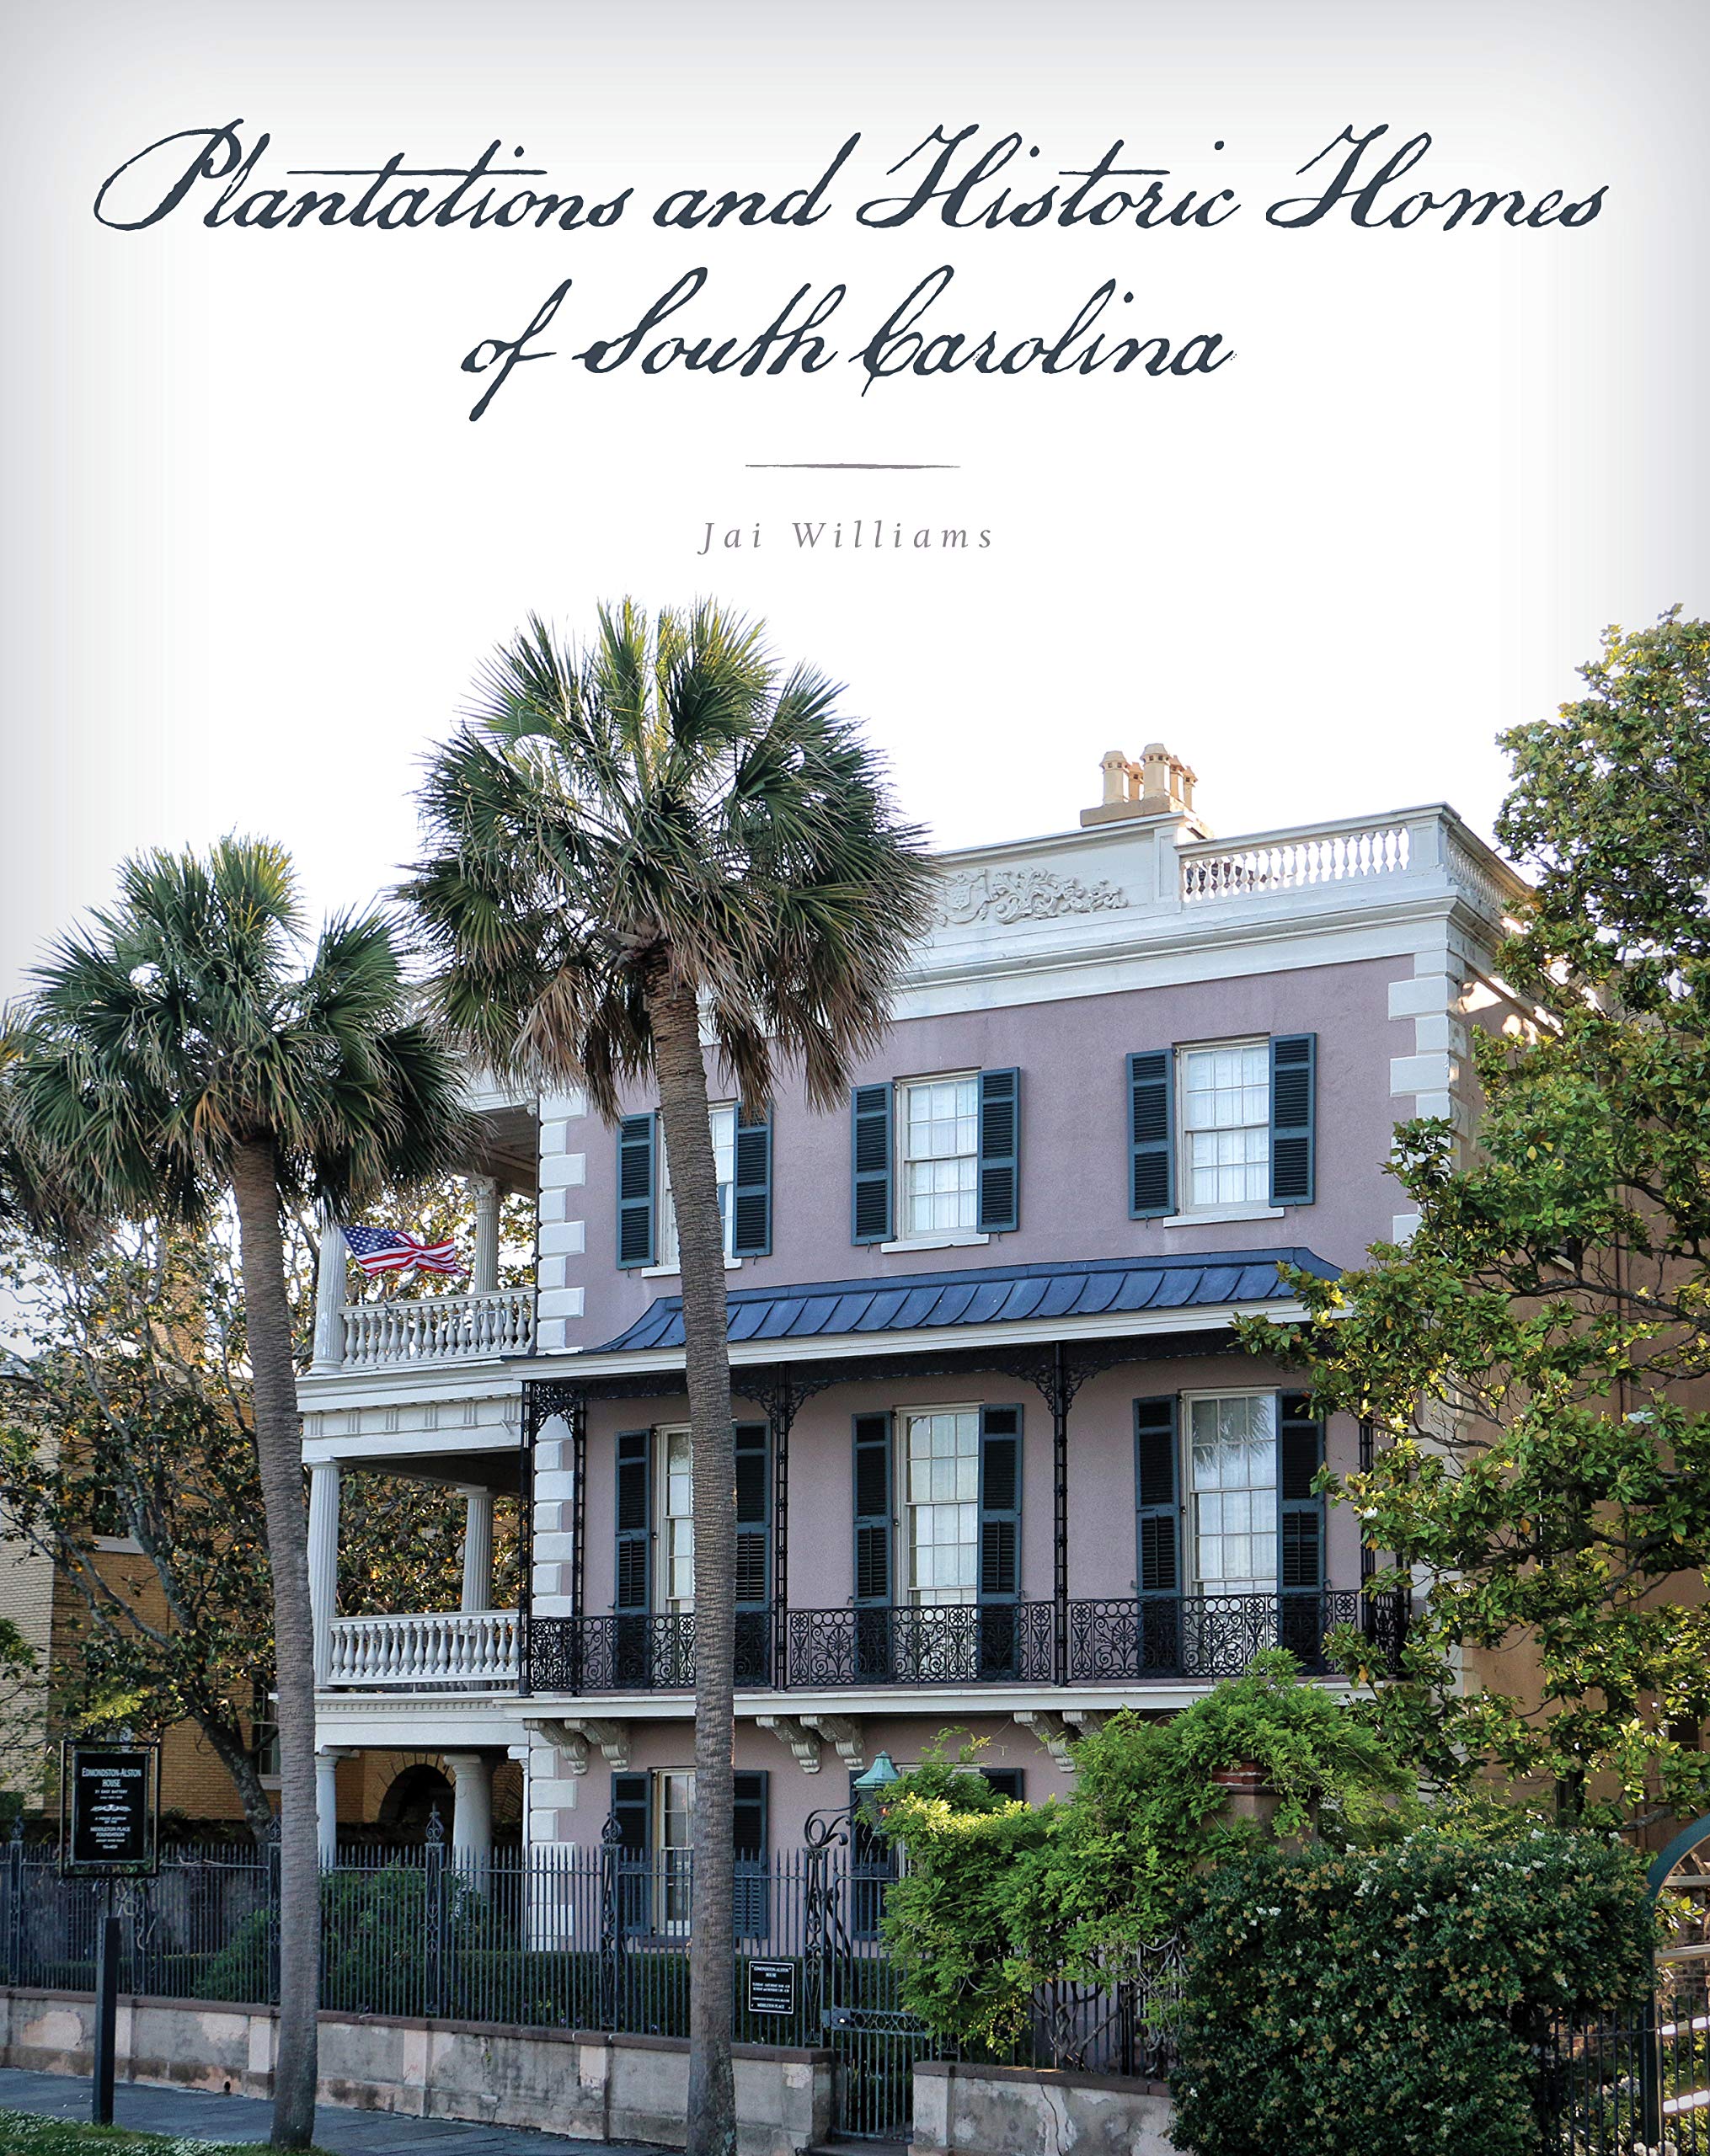 Plantations and Historic Homes of South Carolina